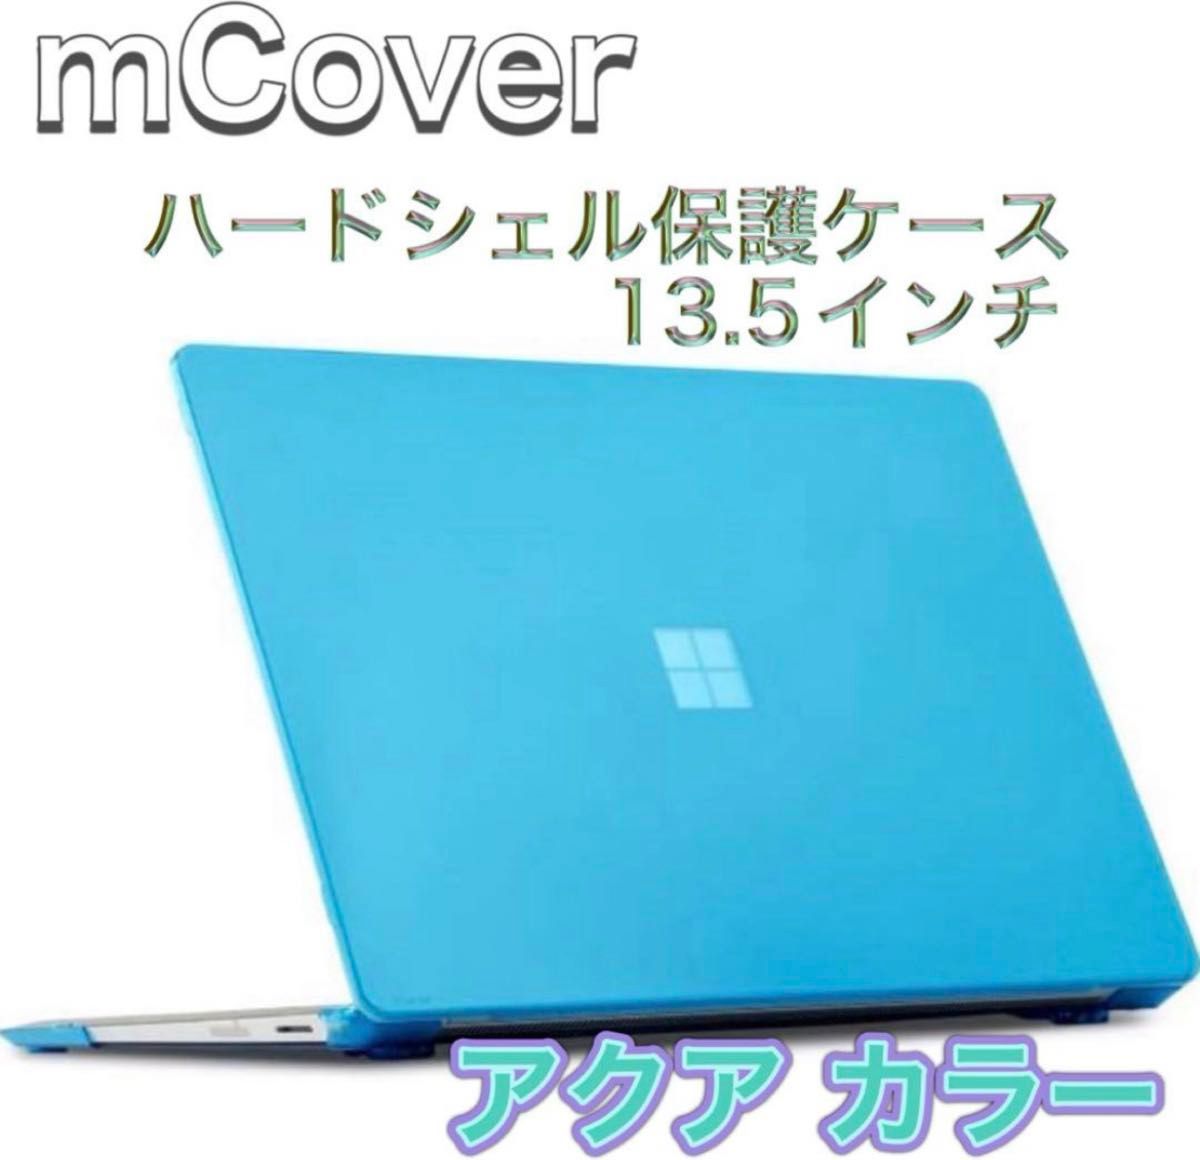 新品・未使用 mCover iPearl 13.5インチ ハードシェル保護ケース パソコン PC Microsoft 青色